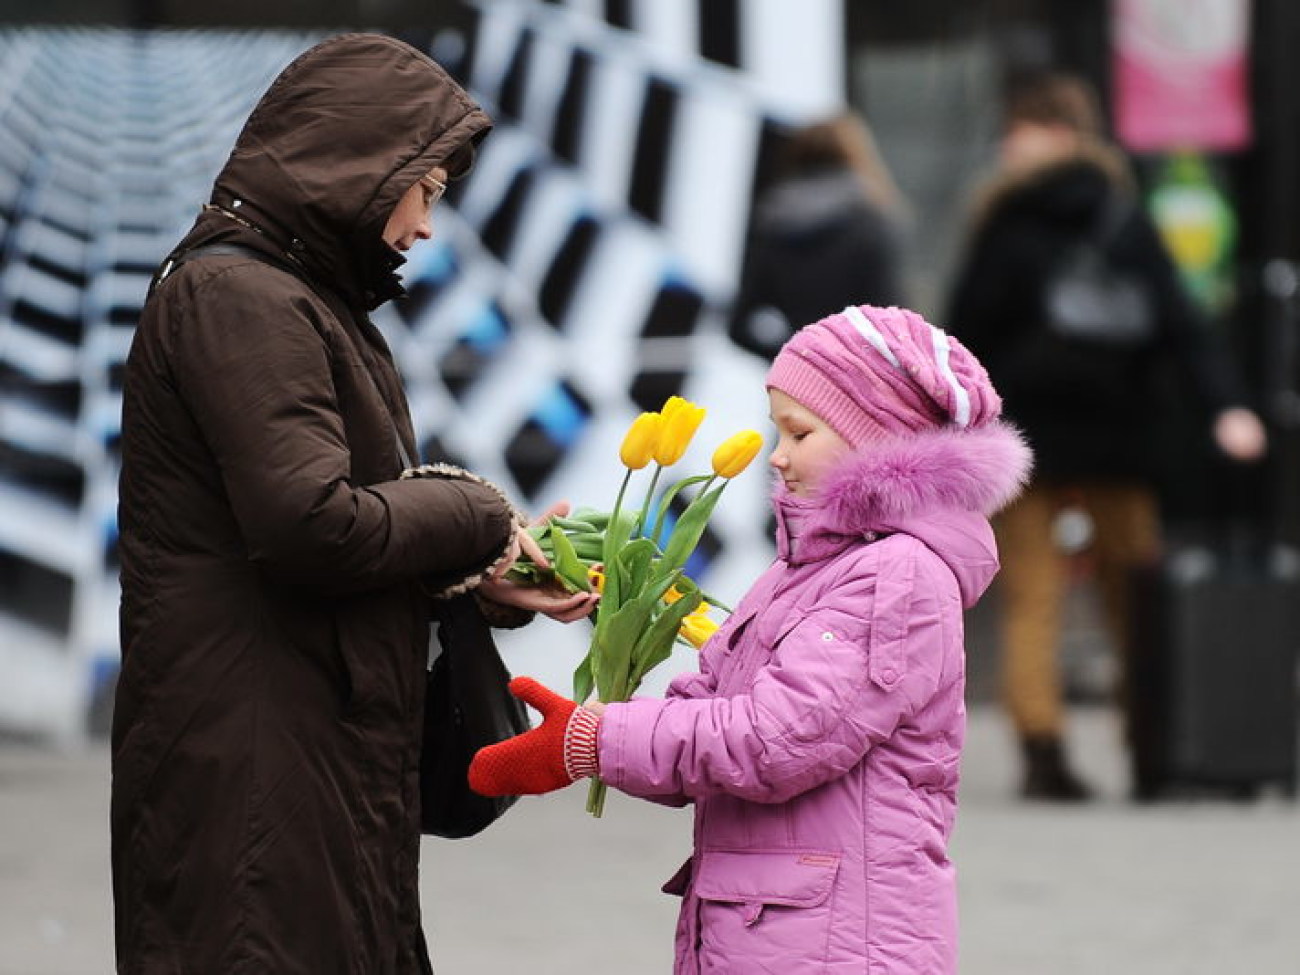 Афганцы на Крещатике дарят тюльпаны милым дамам, 8 марта 2013г.